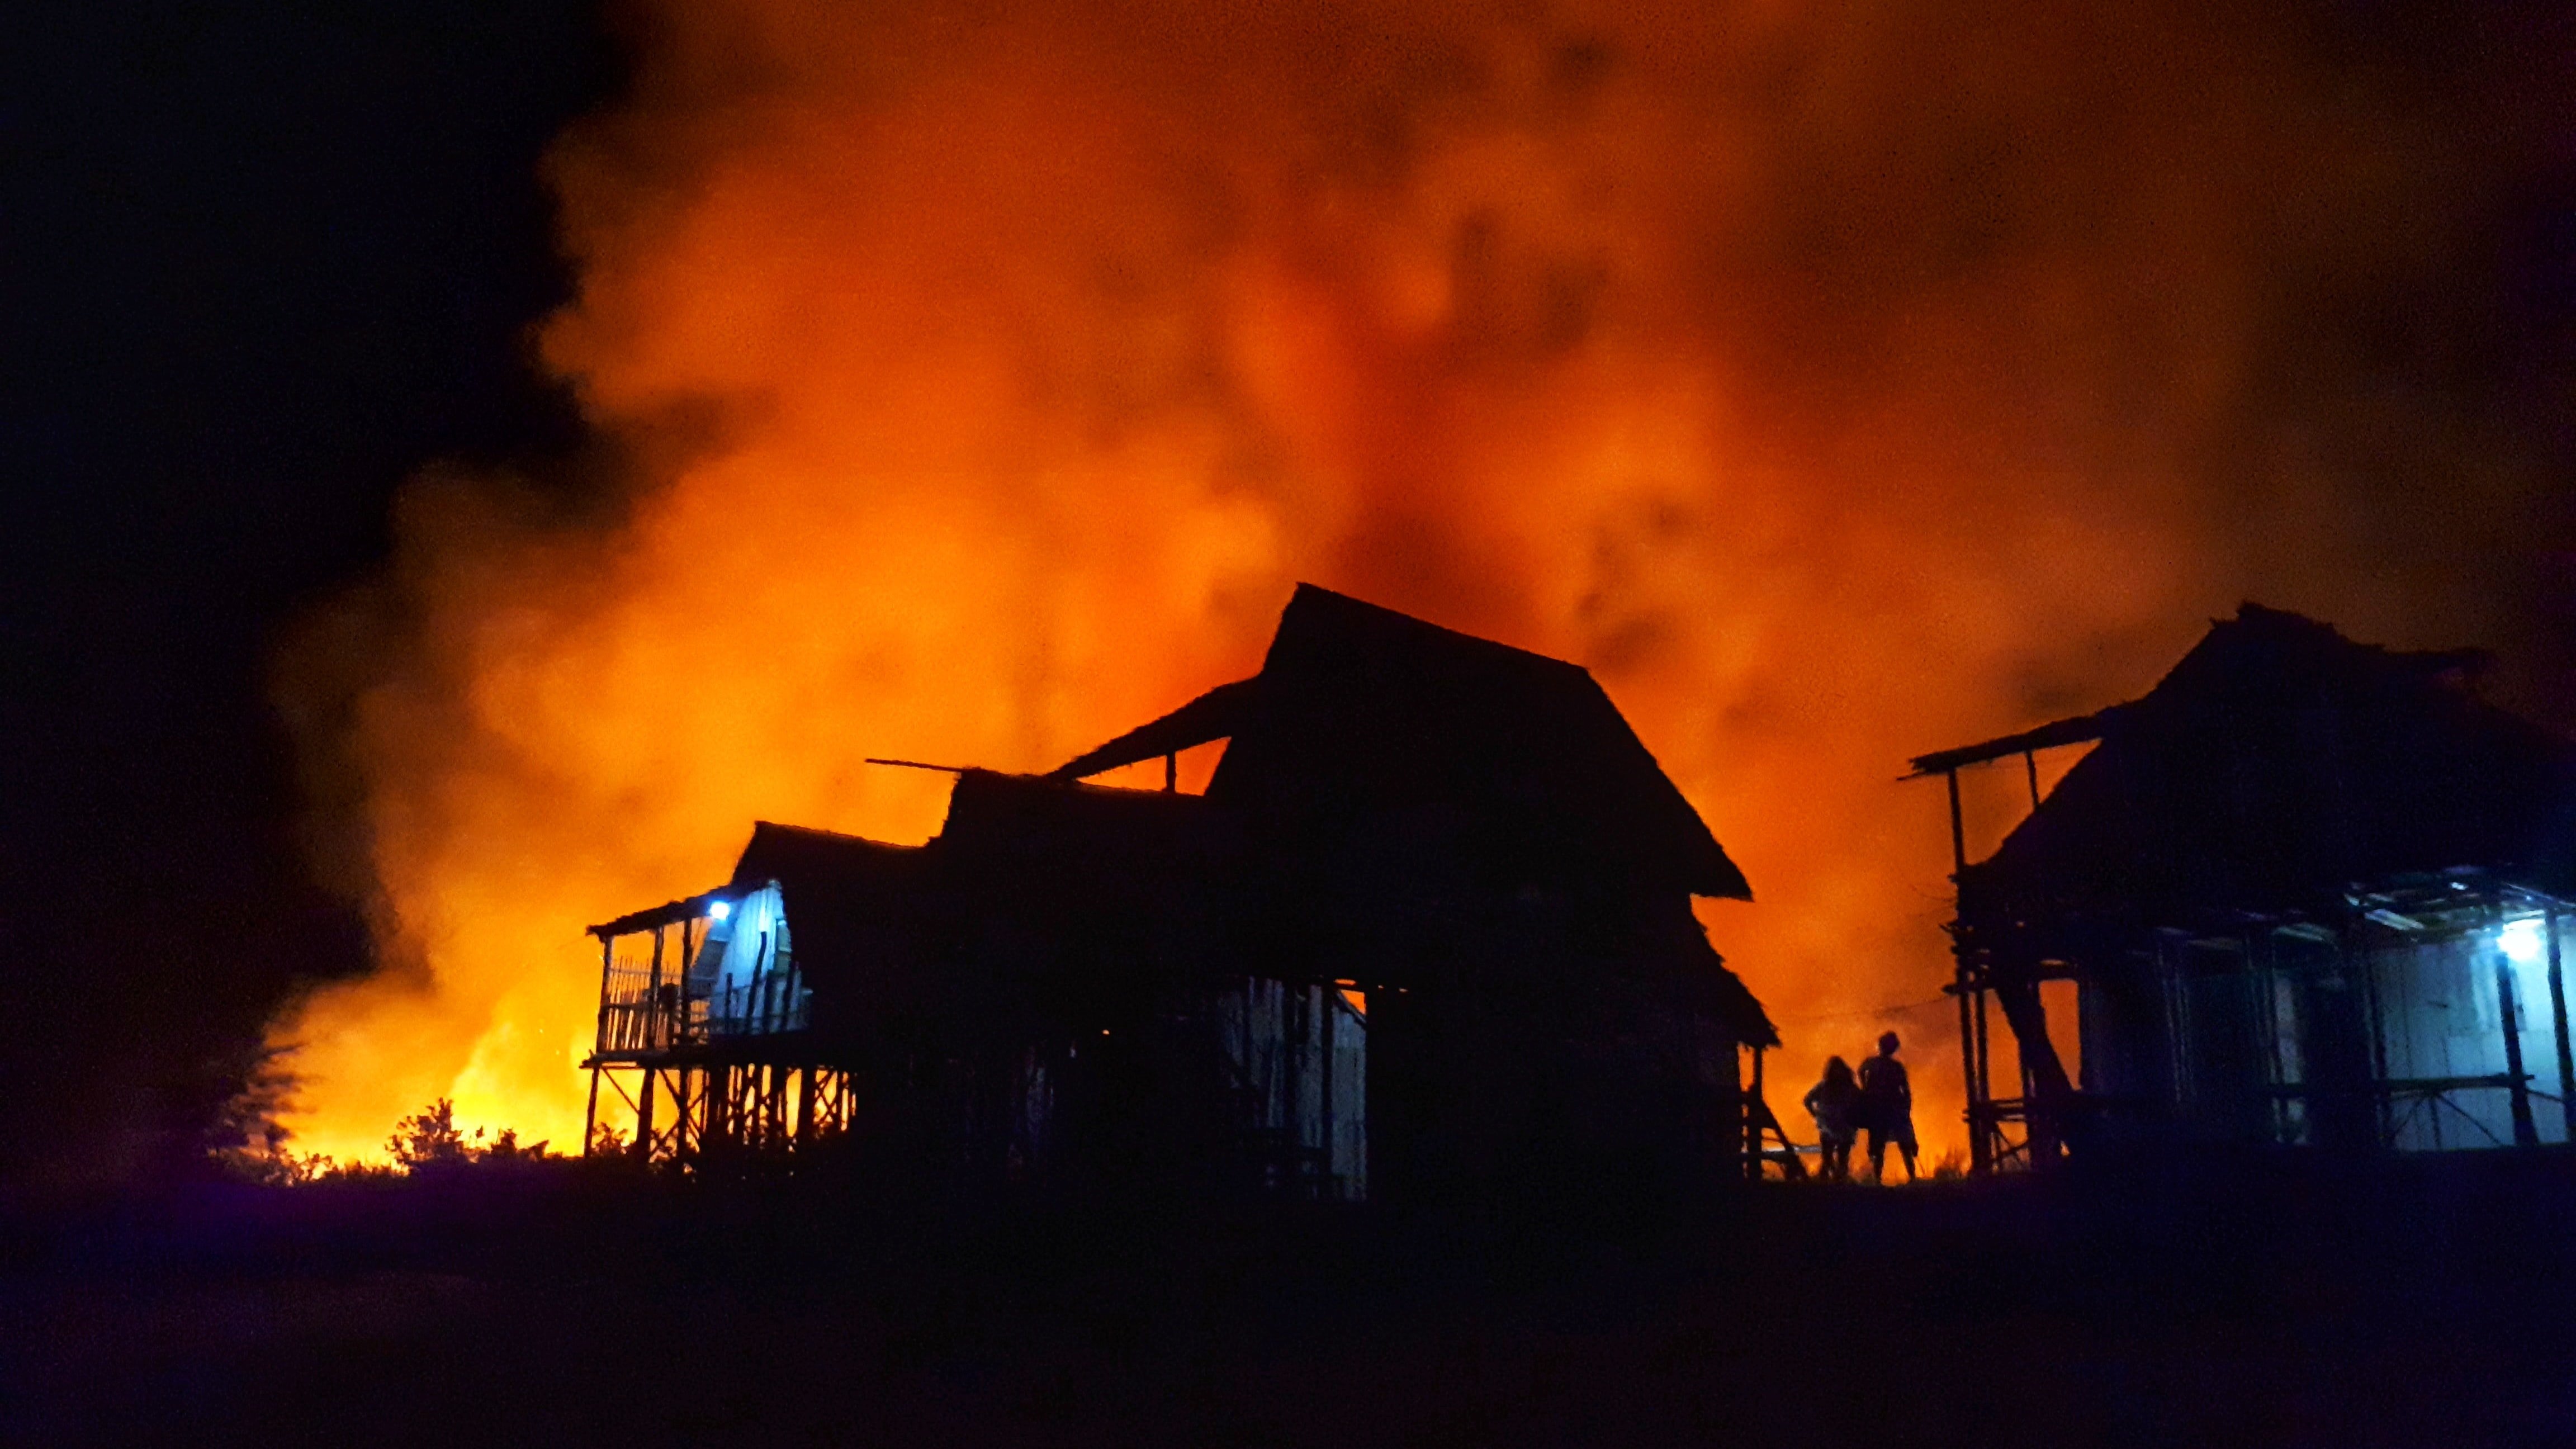 George und Catherine verloren ihr Haus bei einem Brand | Quelle: Pexels